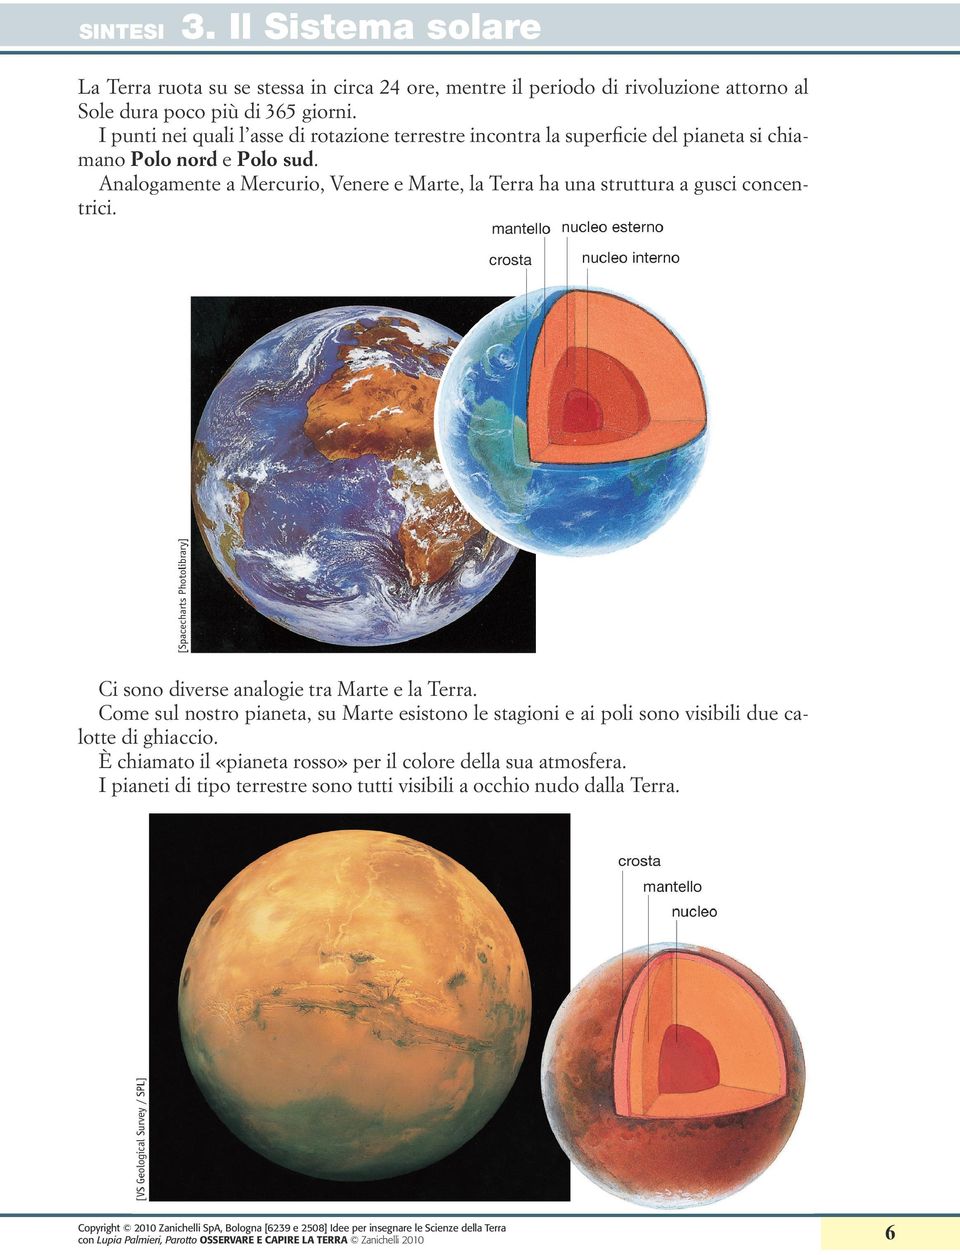 Analogamente a Mercurio, Venere e Marte, la Terra ha una struttura a gusci concentrici. Ci sono diverse analogie tra Marte e la Terra.